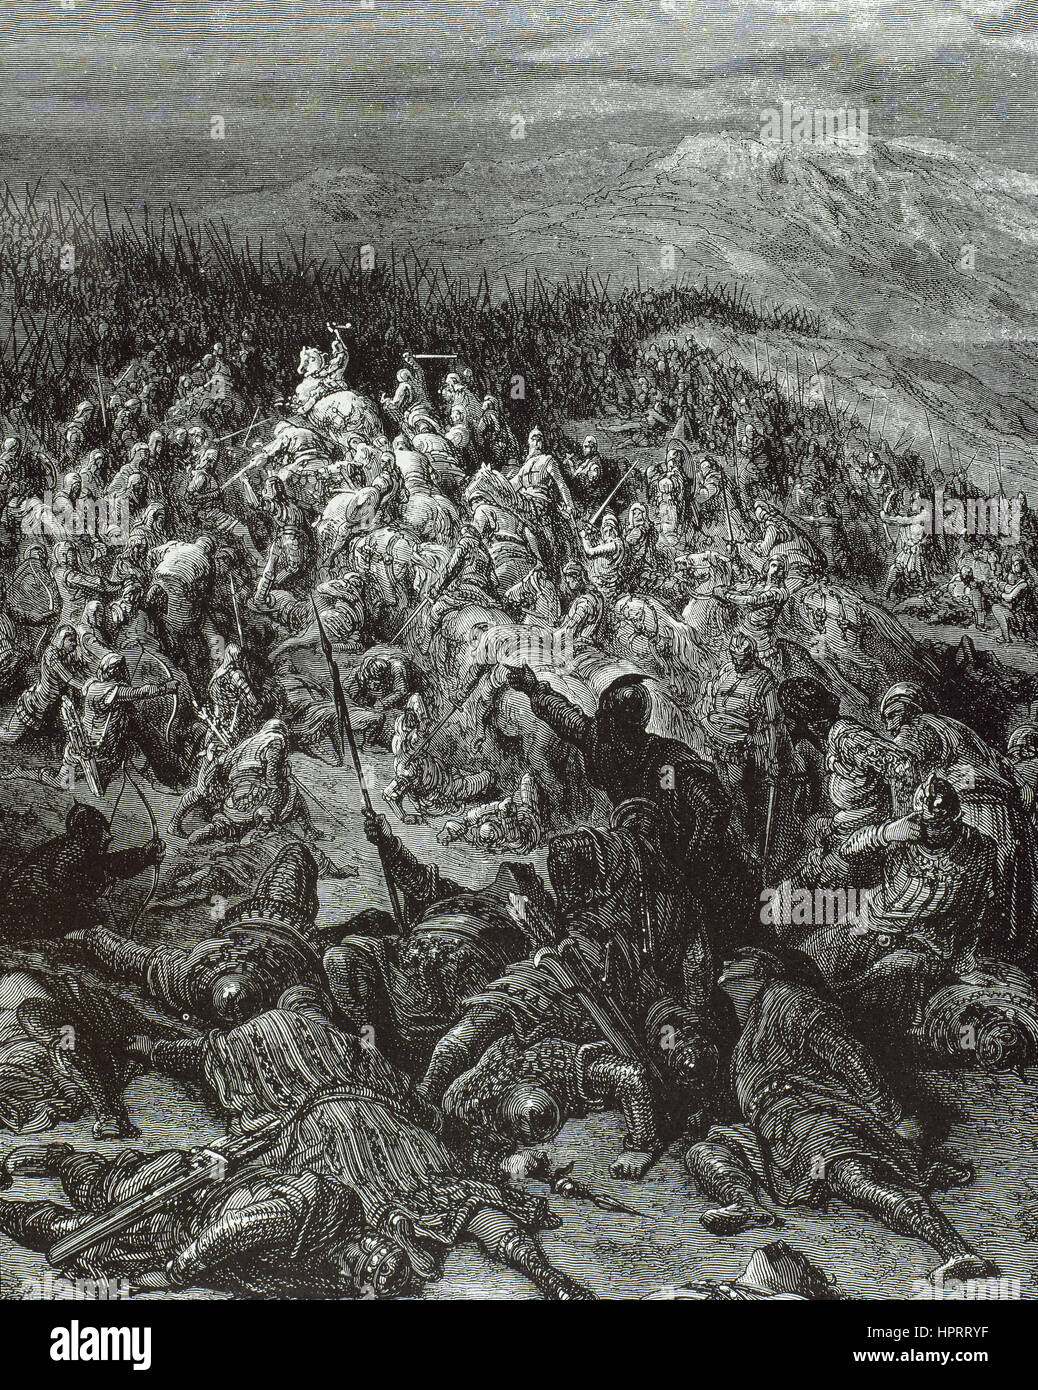 Cruzadas. La lucha entre el cristianismo y las fuerzas musulmanas. Los combates de los cruzados en la batalla contra los turcos de Antioquía. Grabado de Gustave Doré (1832-1883). Foto de stock